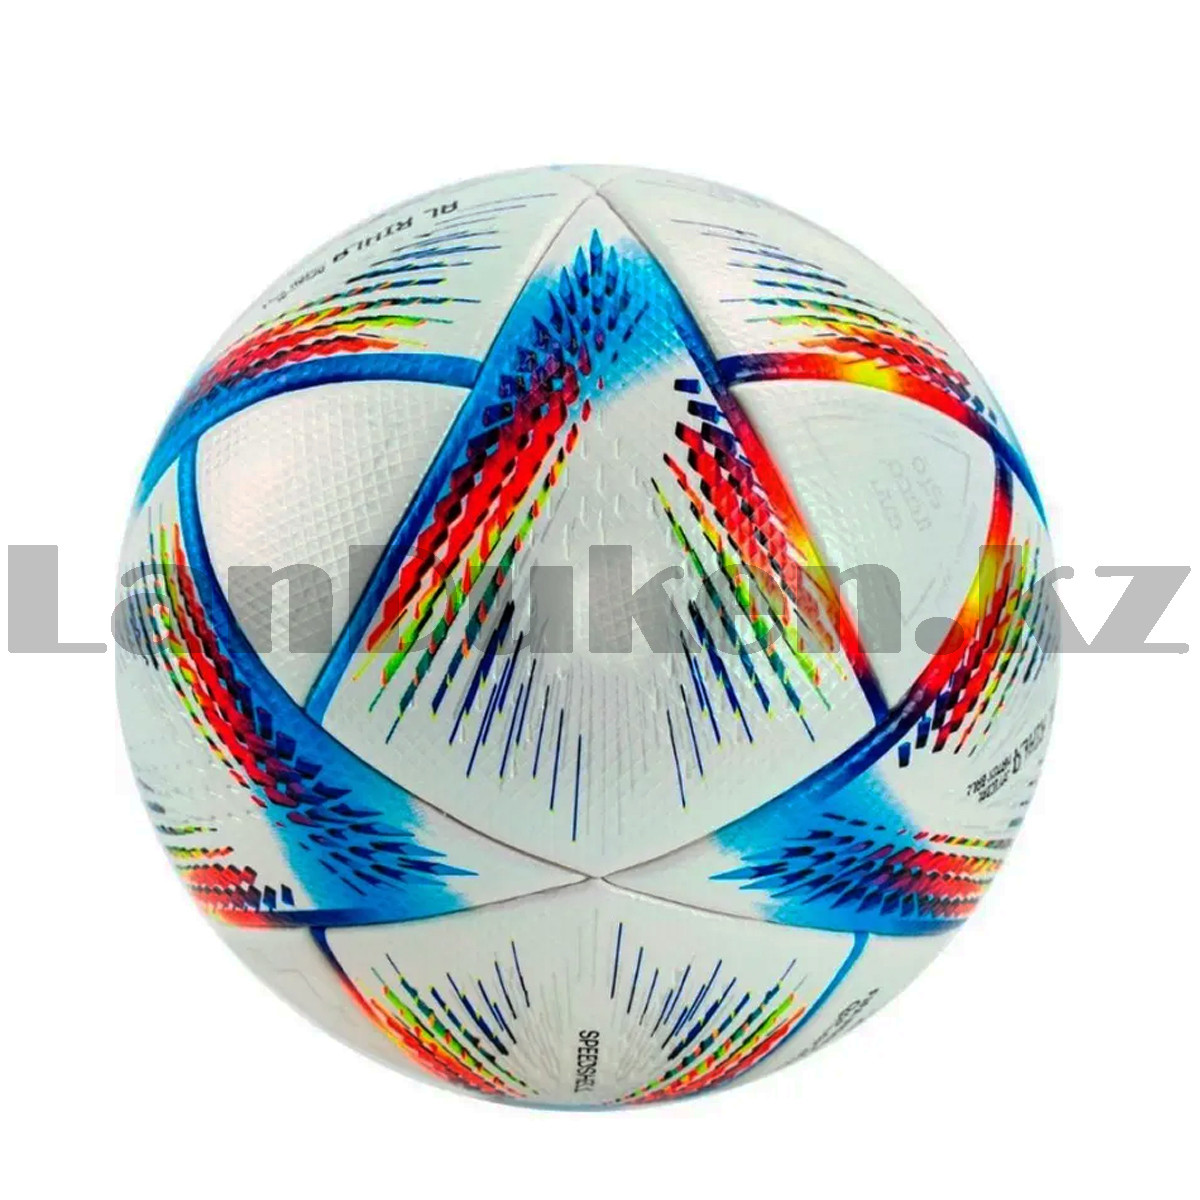 Футбольный мяч FIFA World Cup 2022 размер 5 белый, фото 1